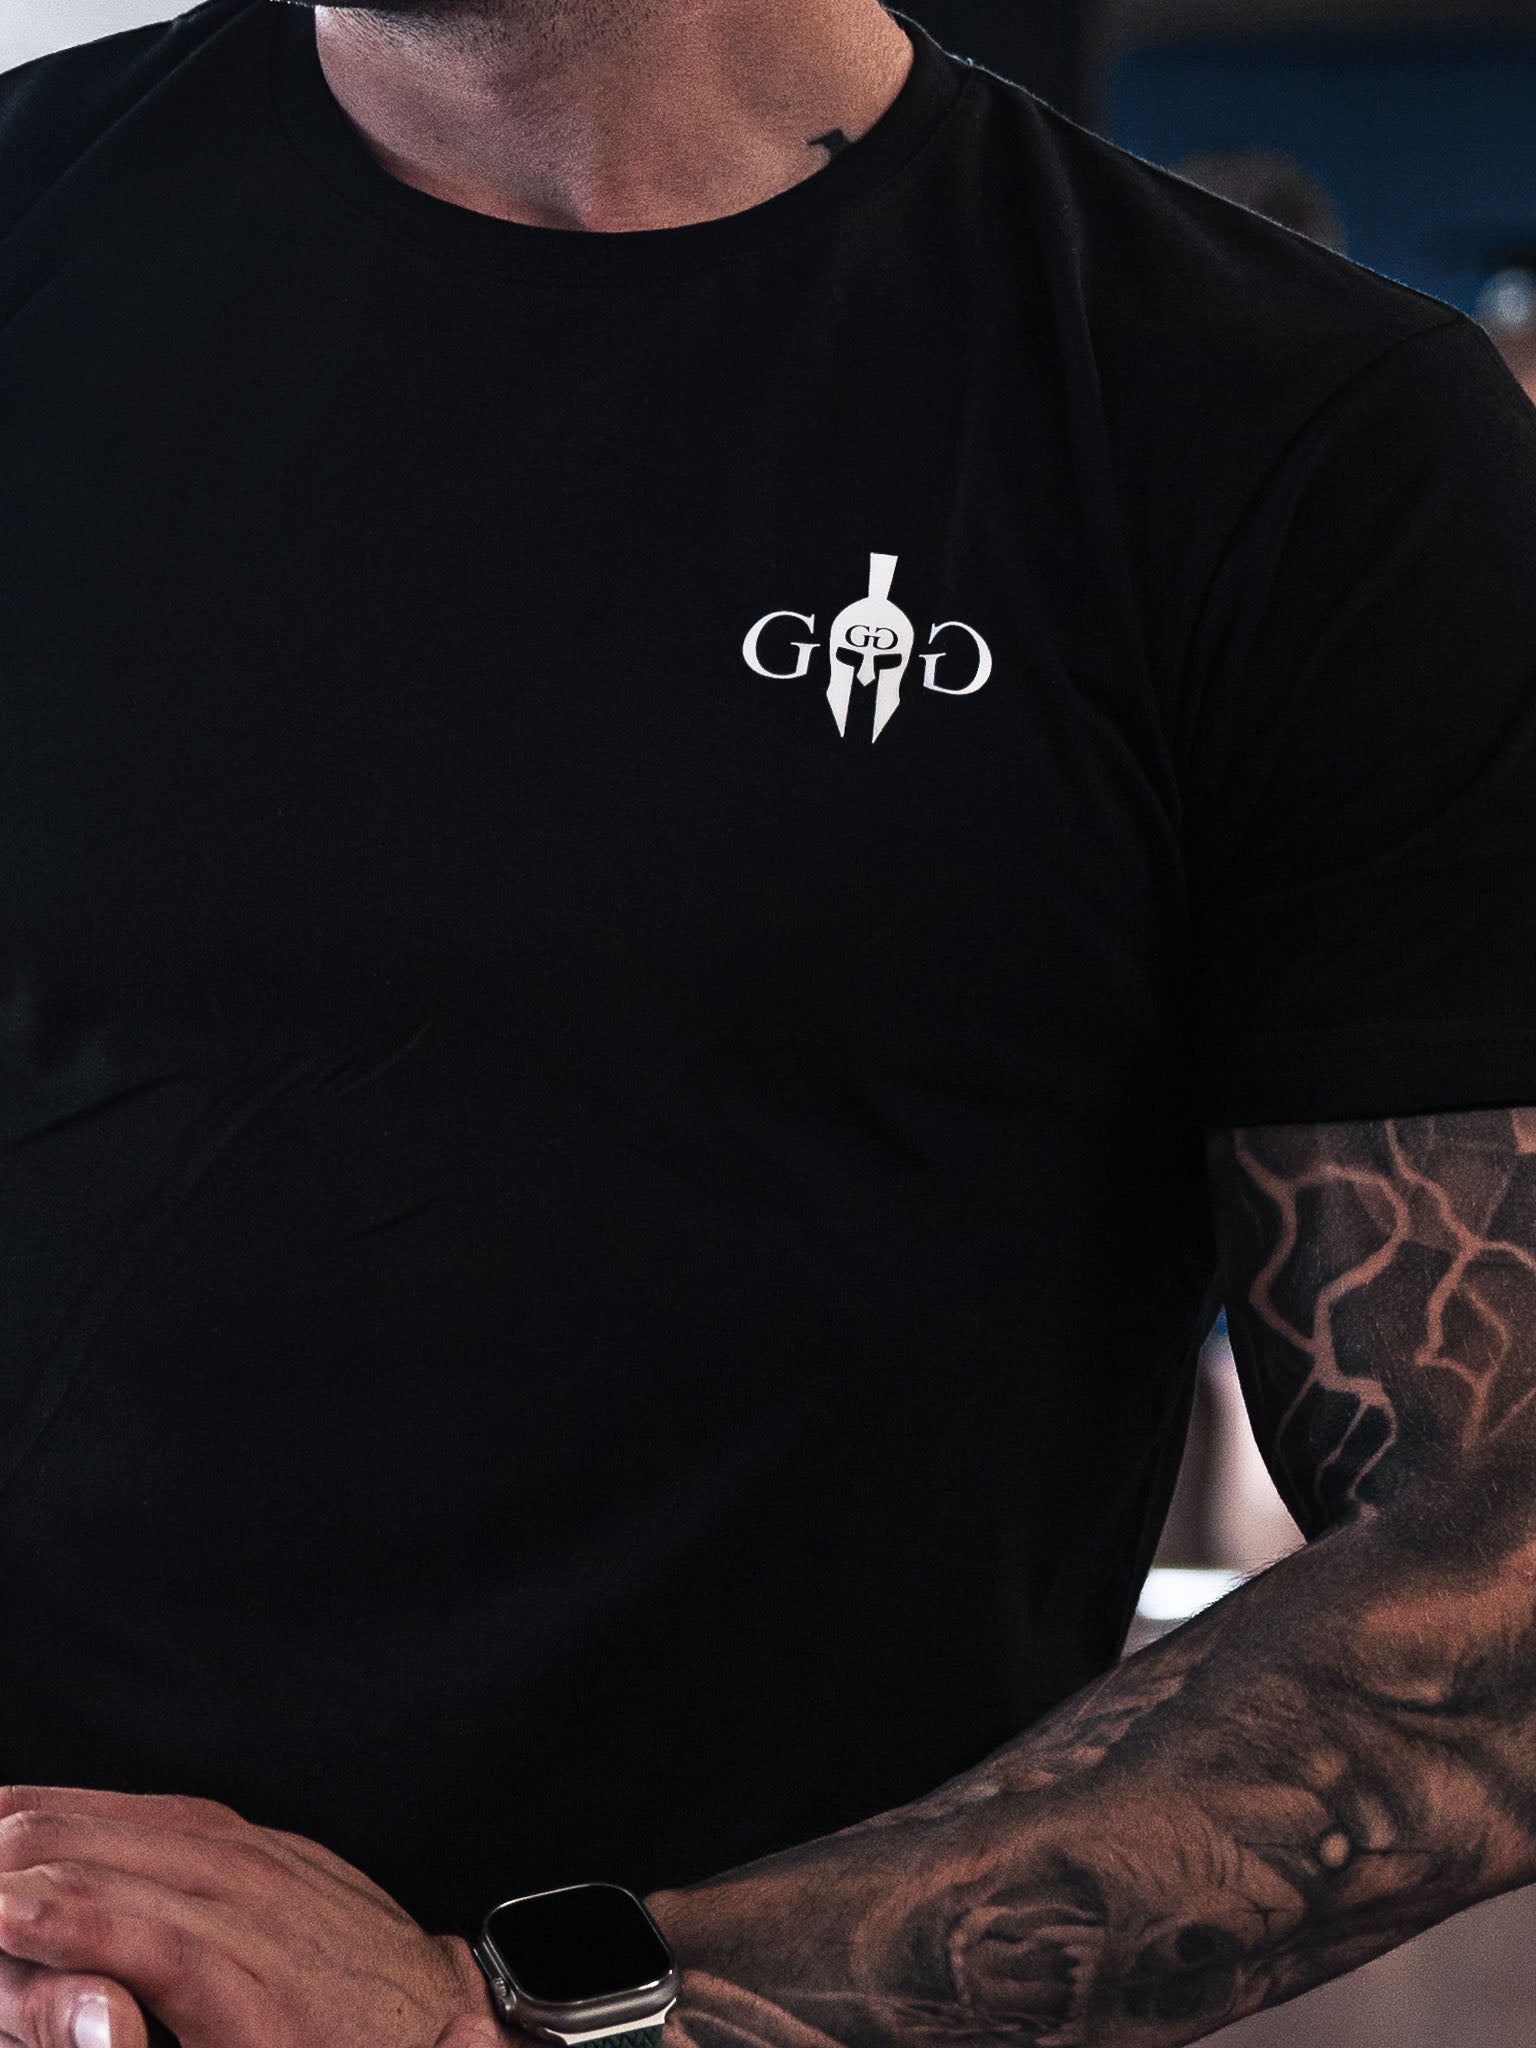 Gym Generation T-Shirt mit einzigartigem Design, symbolisiert Stärke, Ehre und zeitlosen Ruhm.